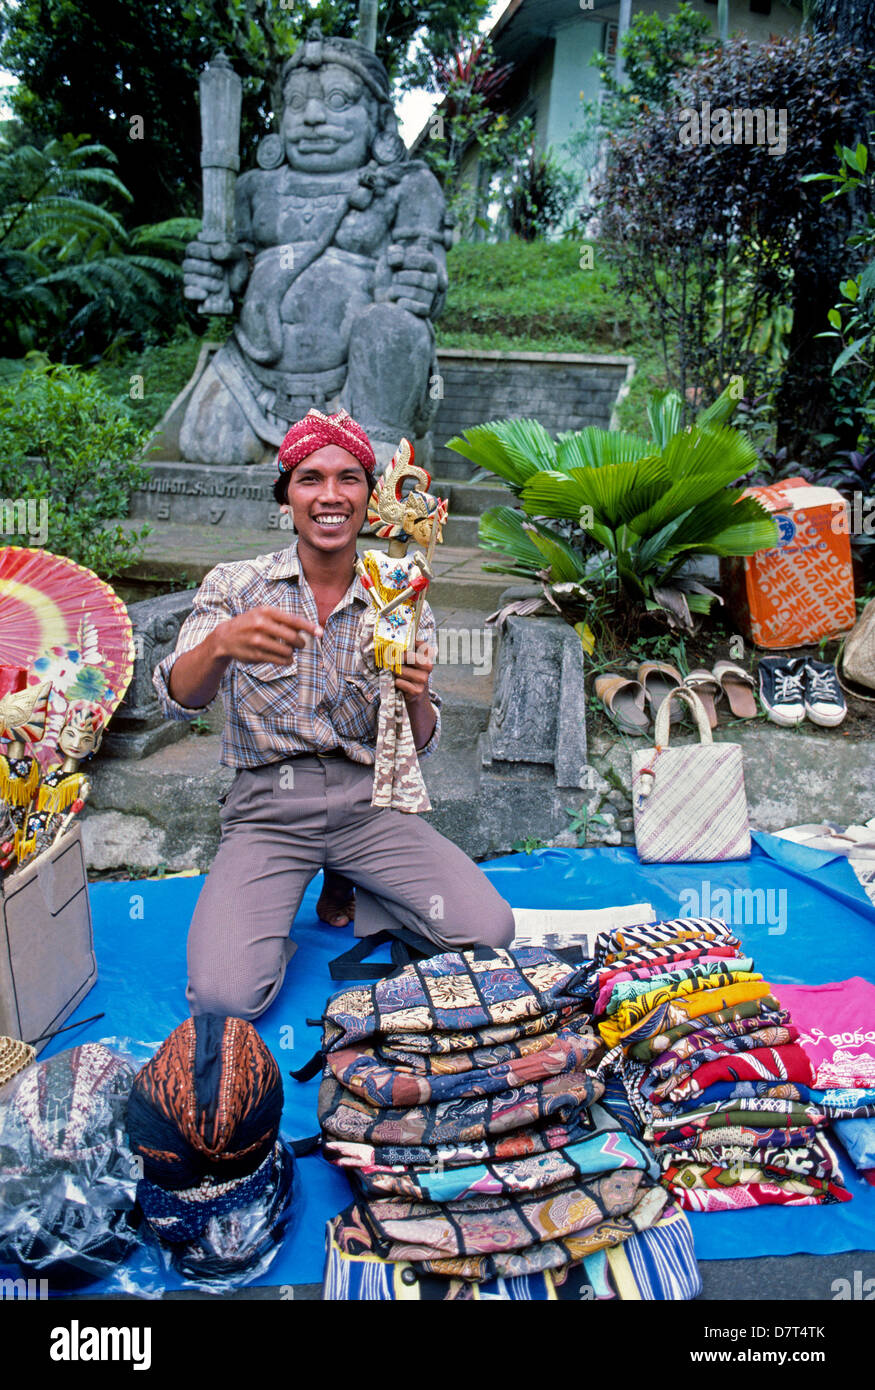 Un vendeur de souvenirs et d'artisanat divers montre ses marchandises à des touristes près de Semarang sur l'île de Java en Indonésie en Asie du sud-est. Banque D'Images